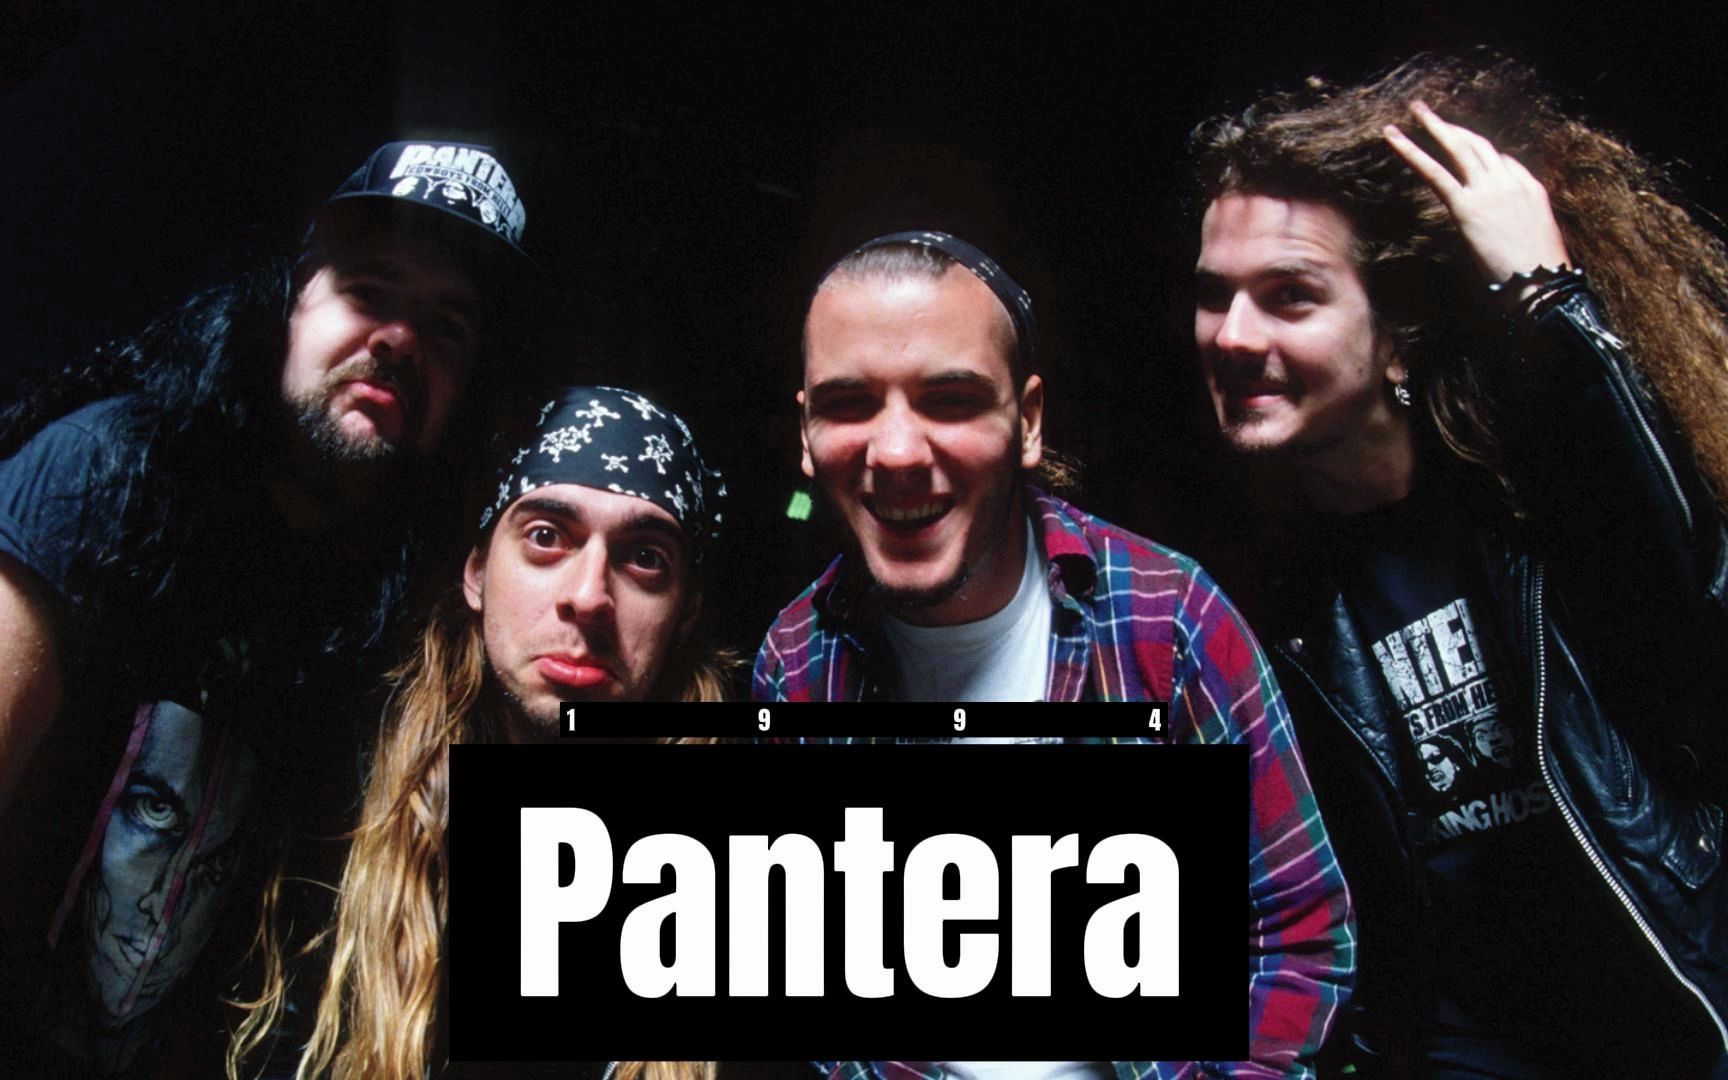 pantera乐队吉他手图片